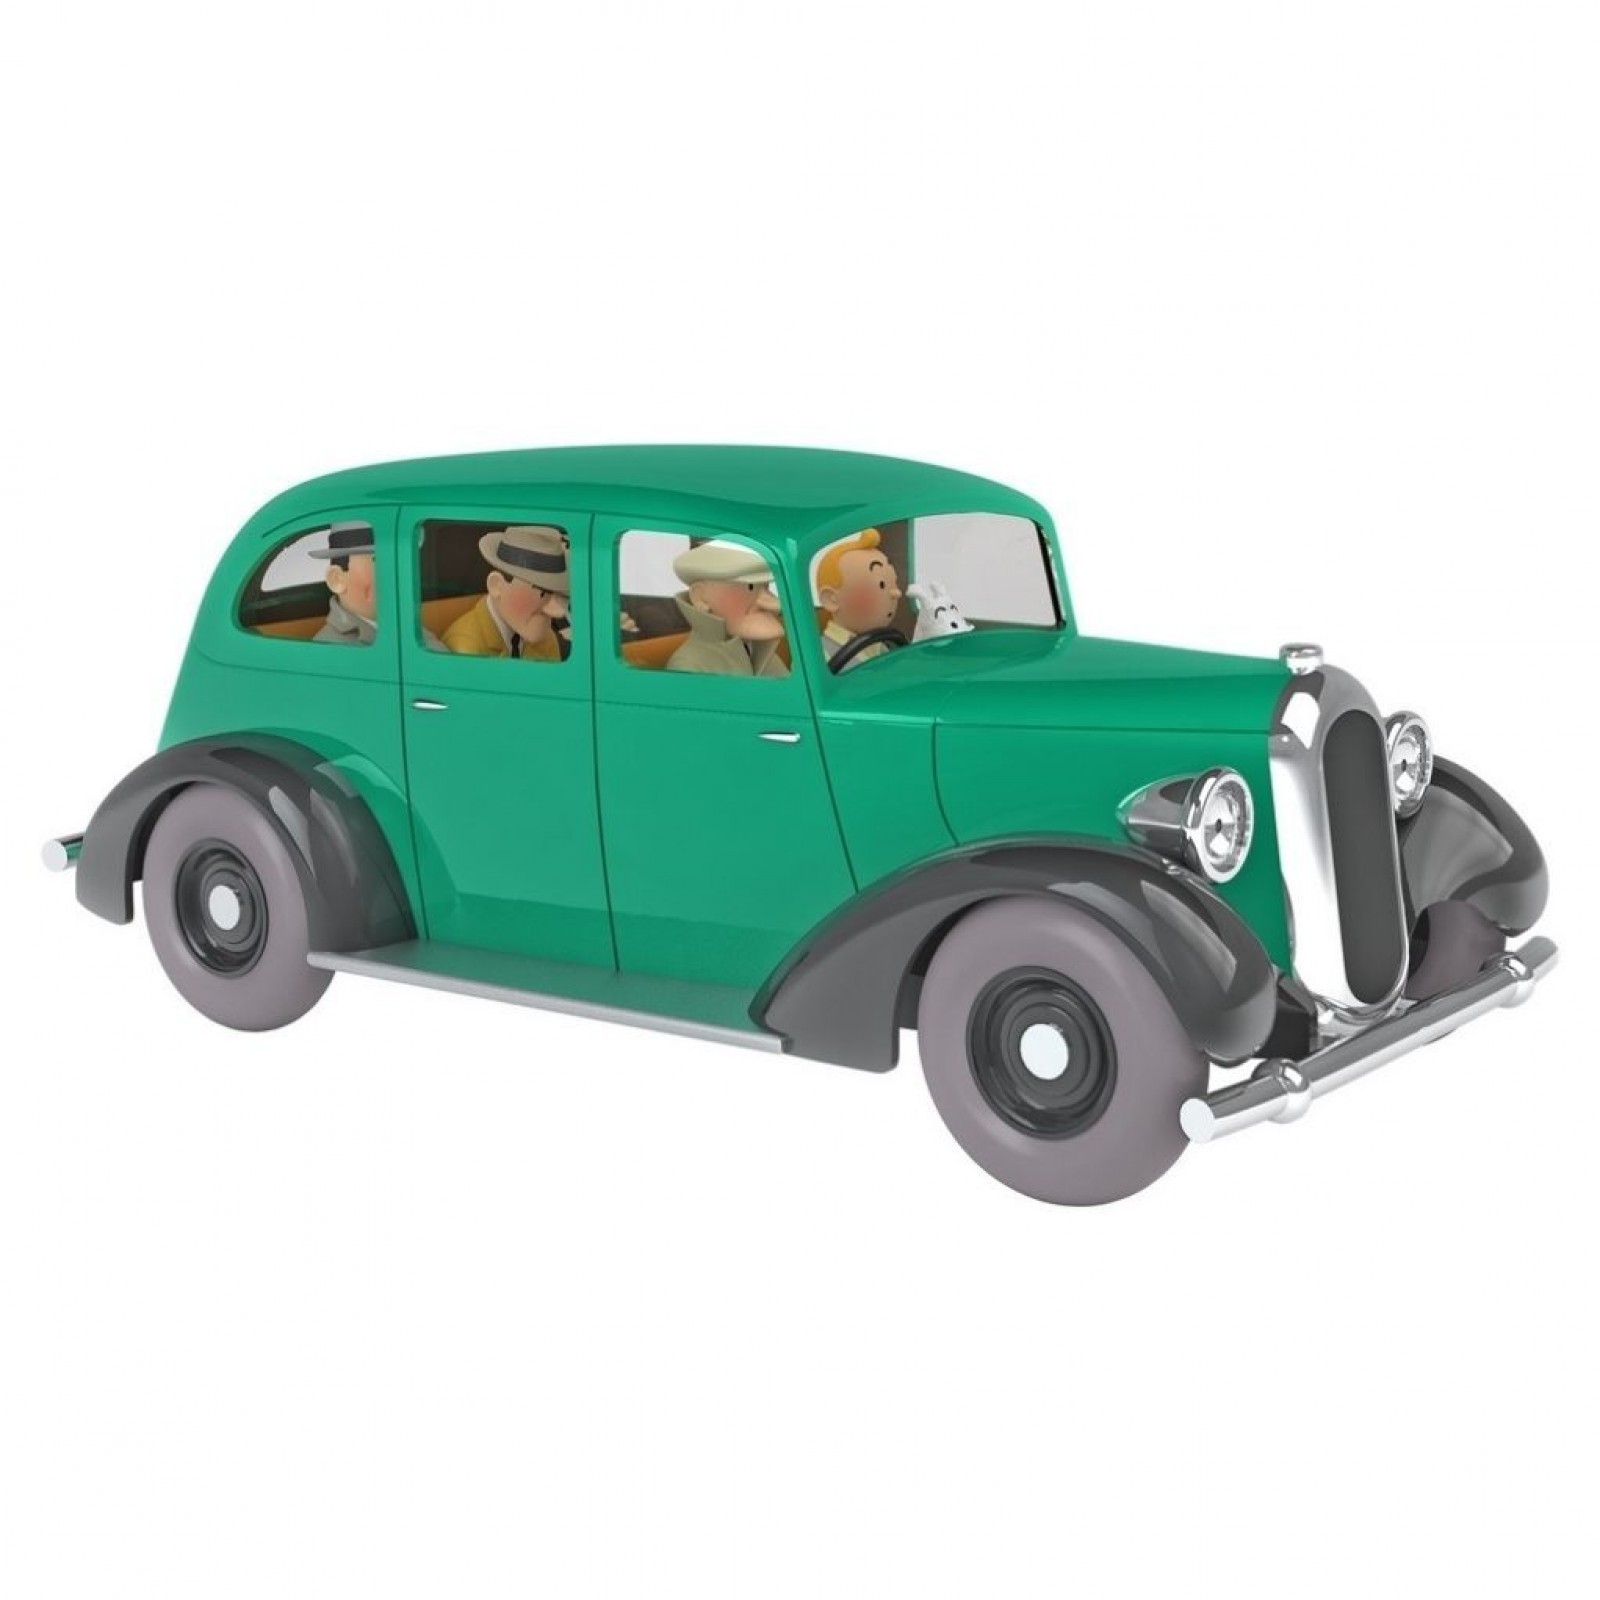 Les Véhicules de Tintin au 1/24 : La voiture des Gangsters - Figurines